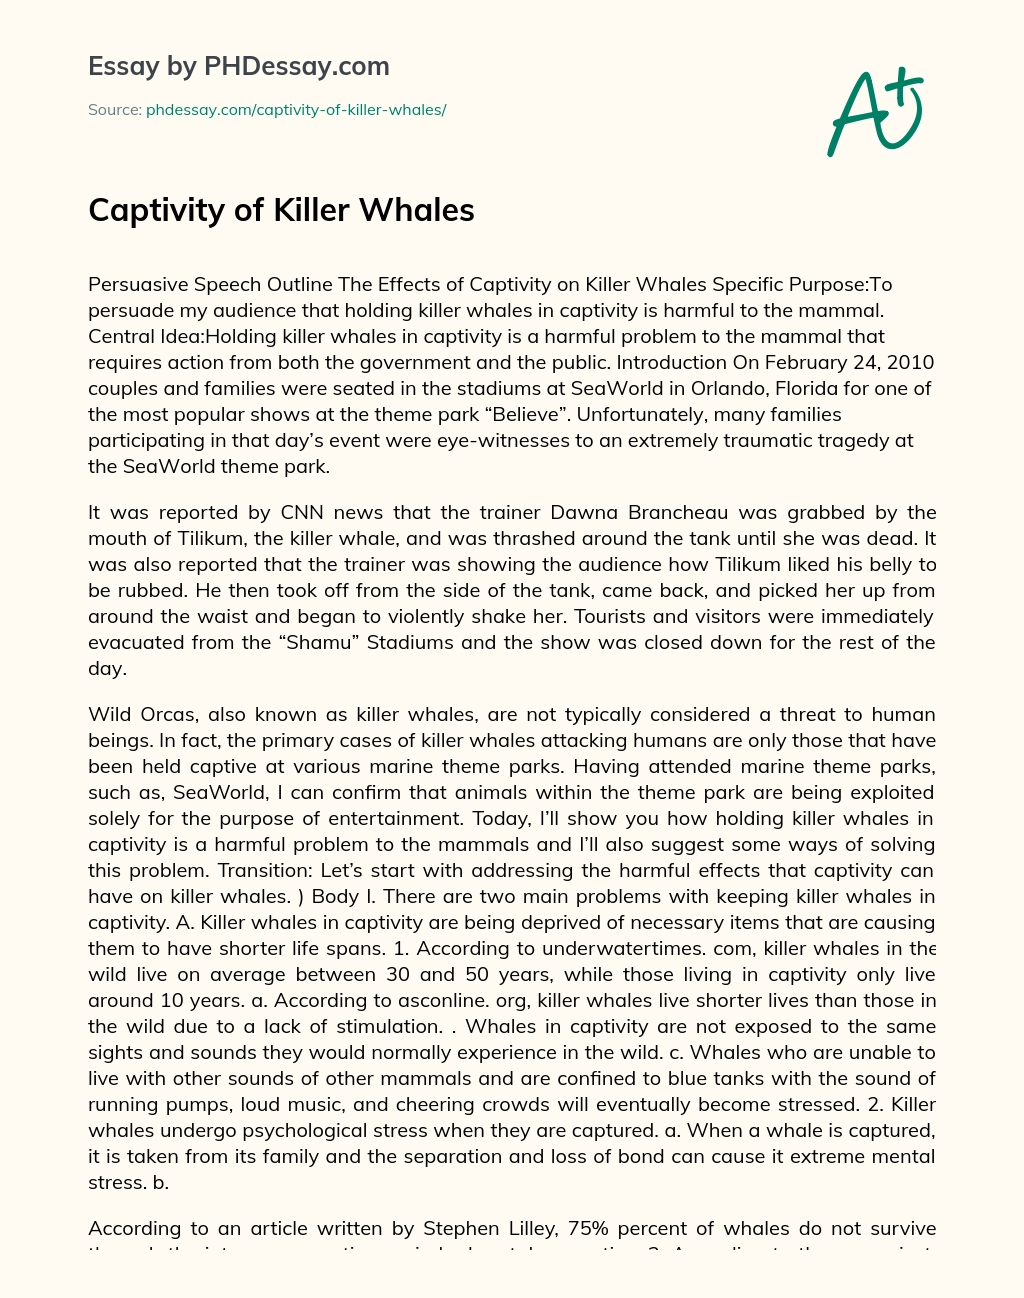 Captivity of Killer Whales essay